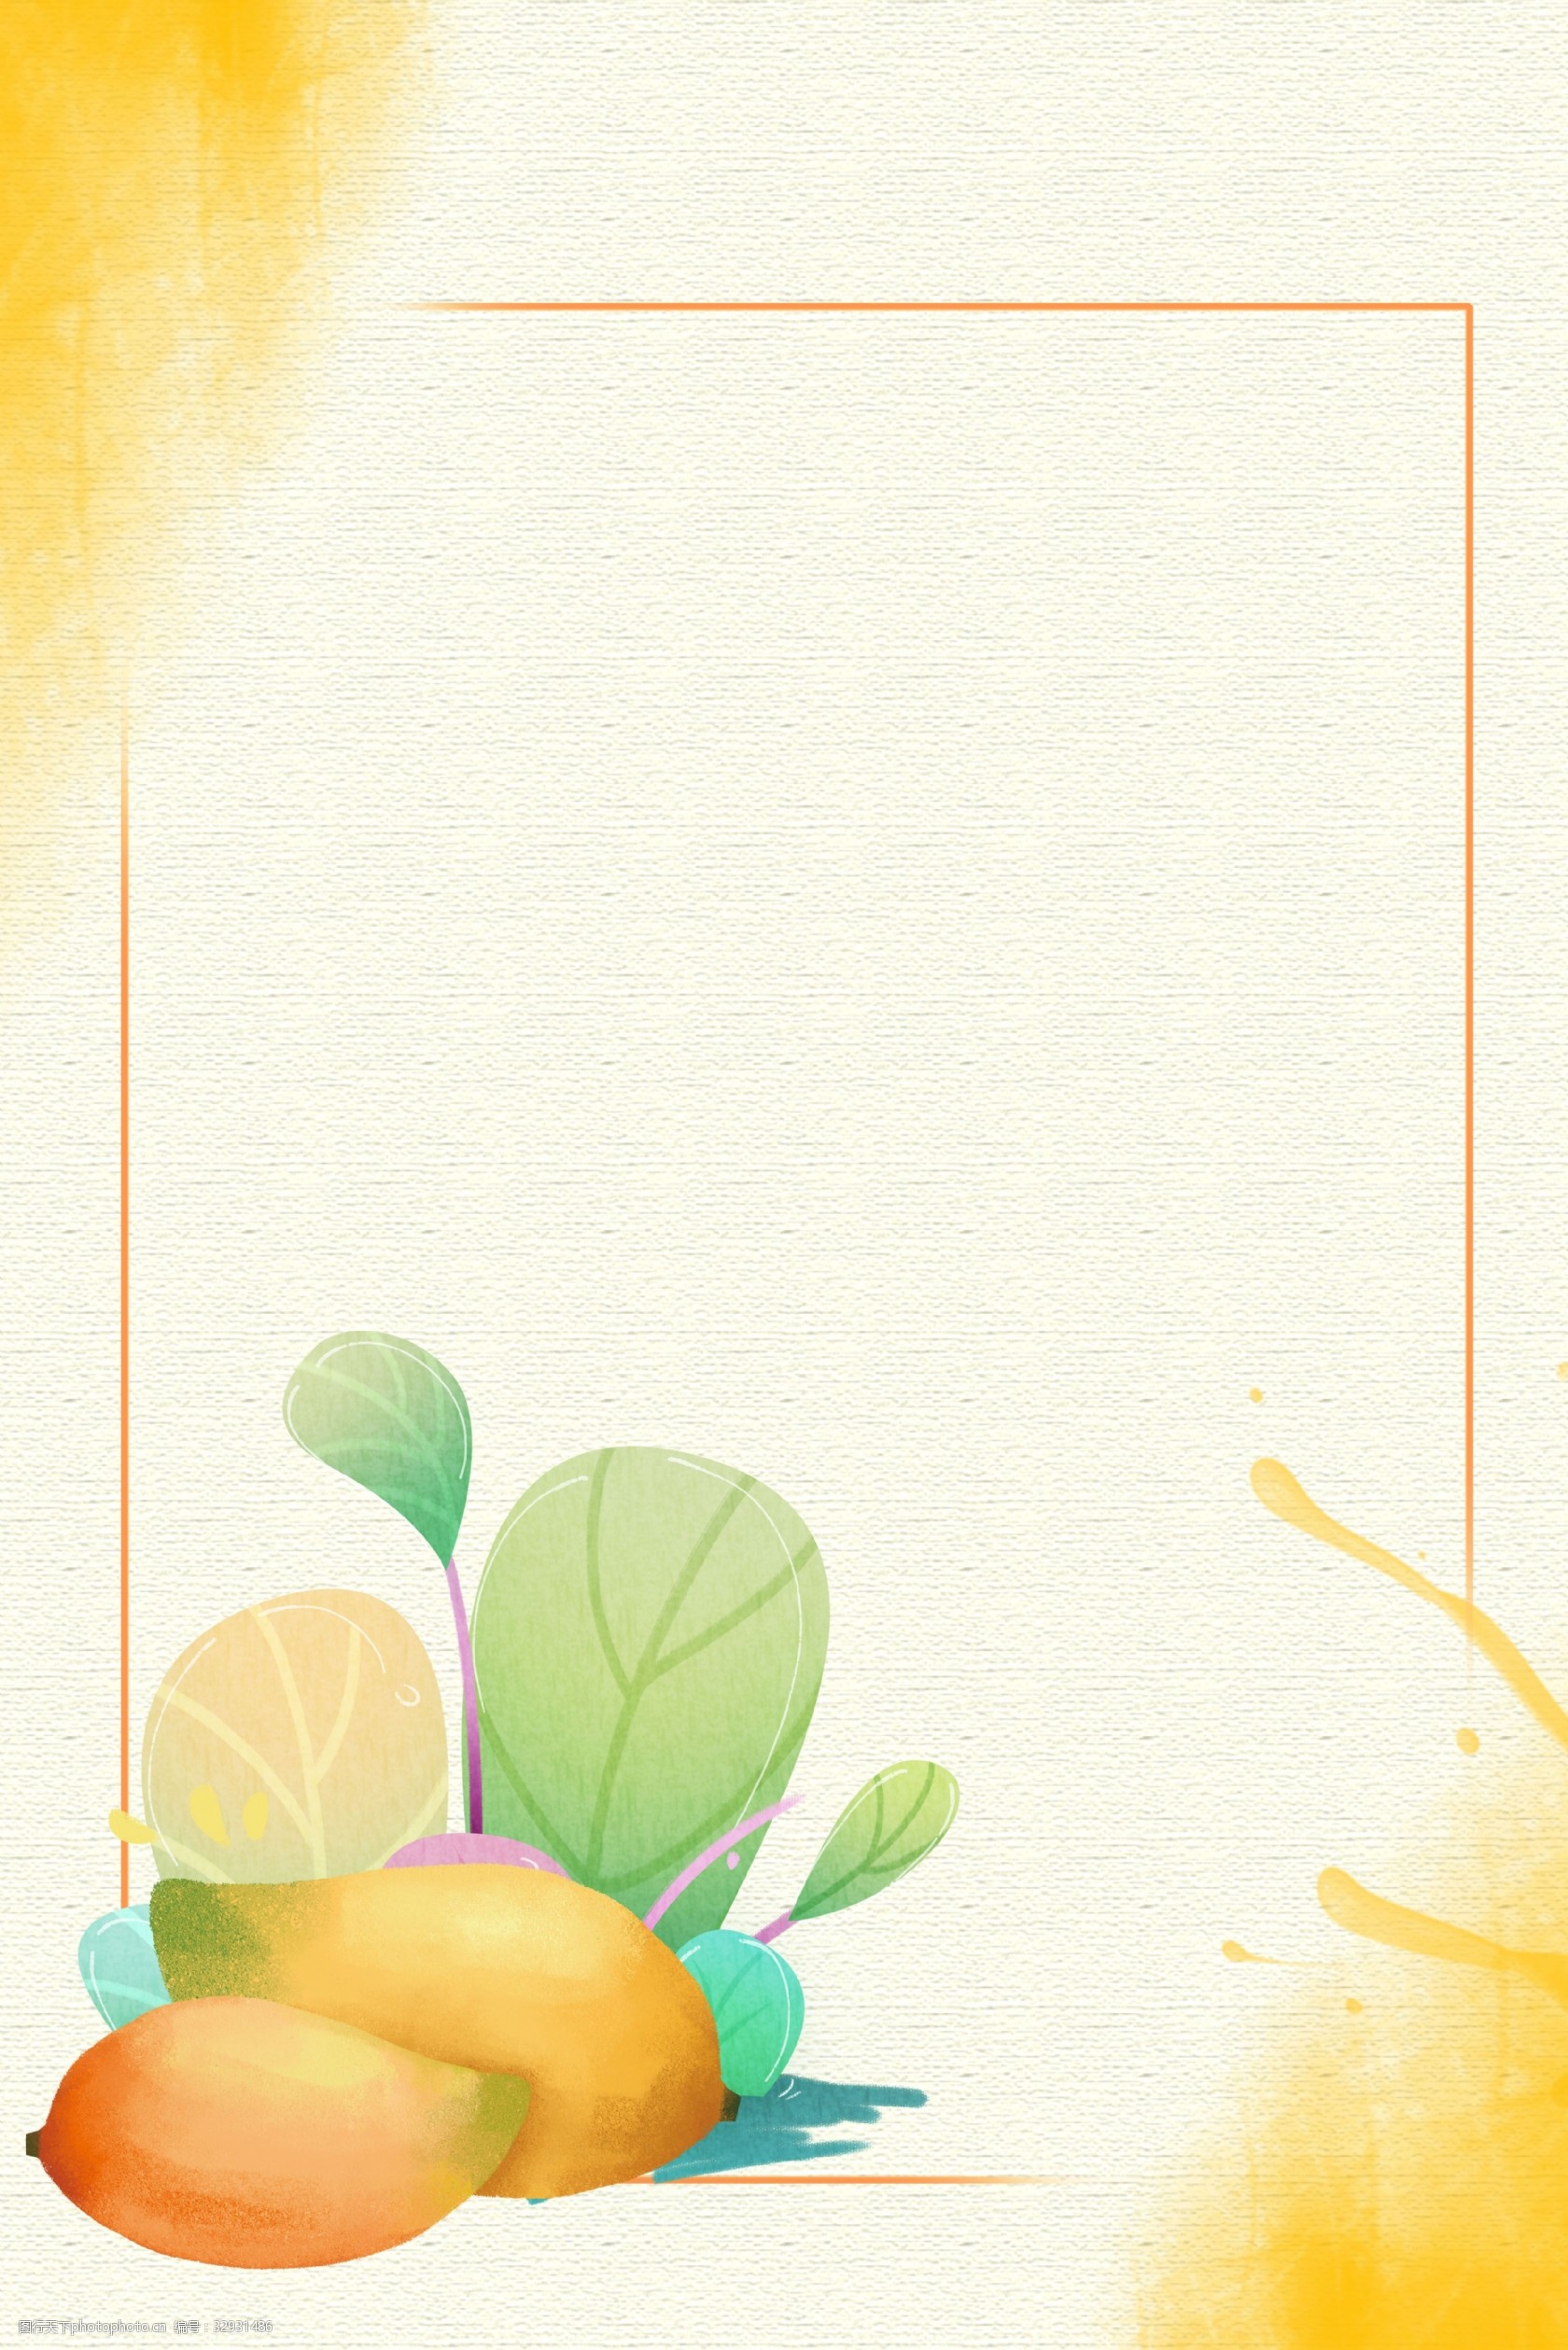 关键词:芒果水果背景 简约 清新 纹理 淡雅 水果 芒果 卡通 花卉